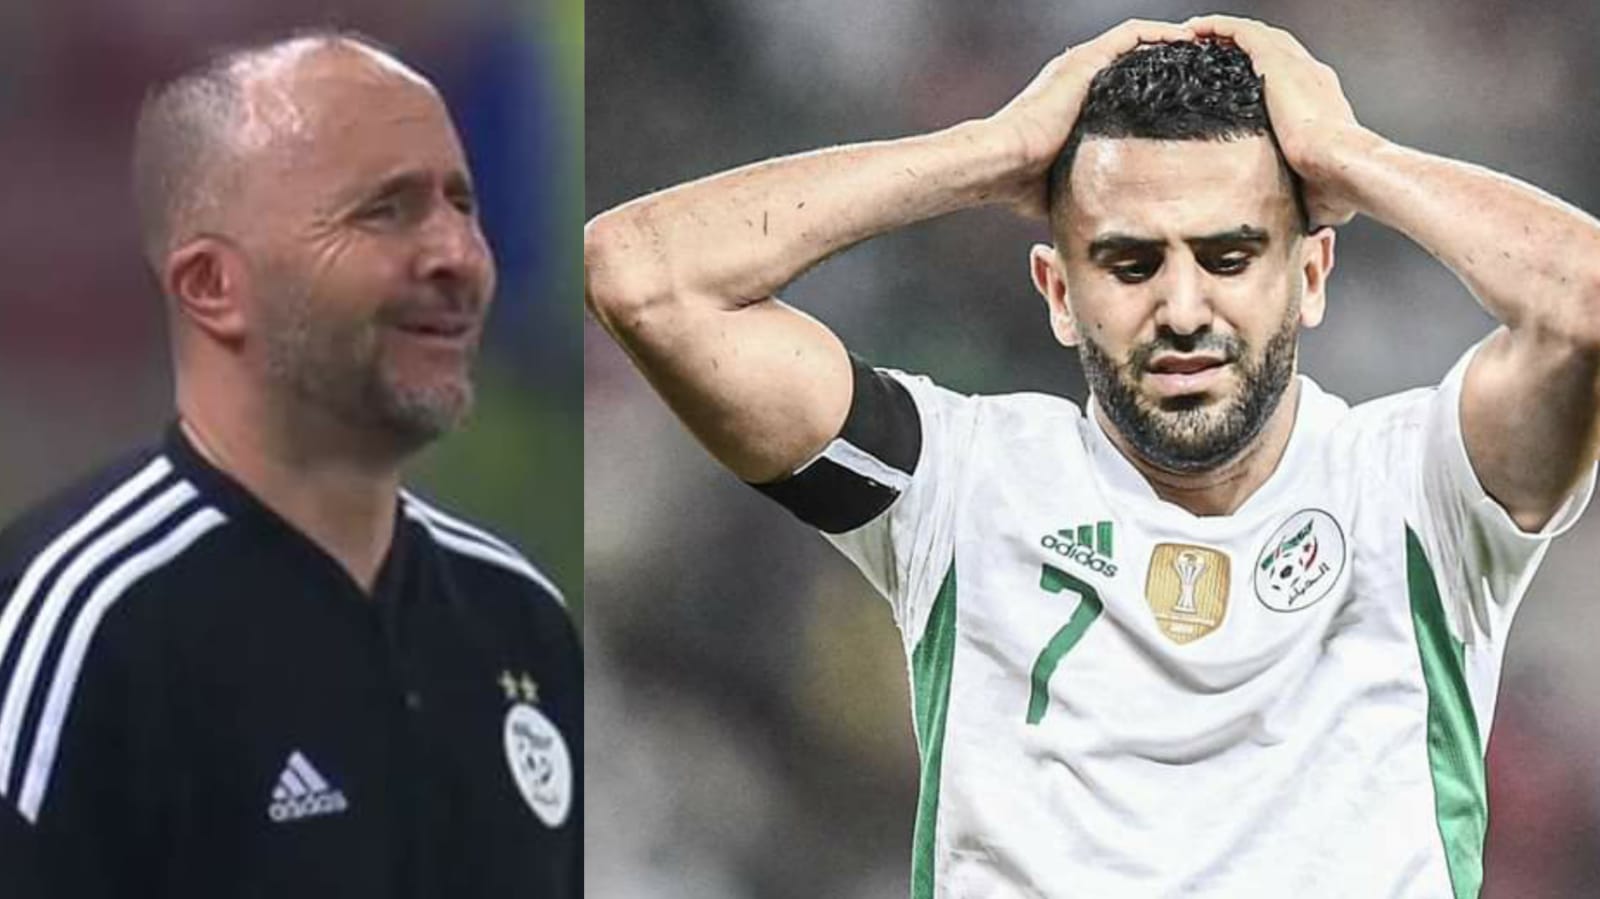 المنتخب الجزائري يتلقى هزيمة ثقيلة ويودع كأس افريقيا وعينه على الفوز بكأس العالم